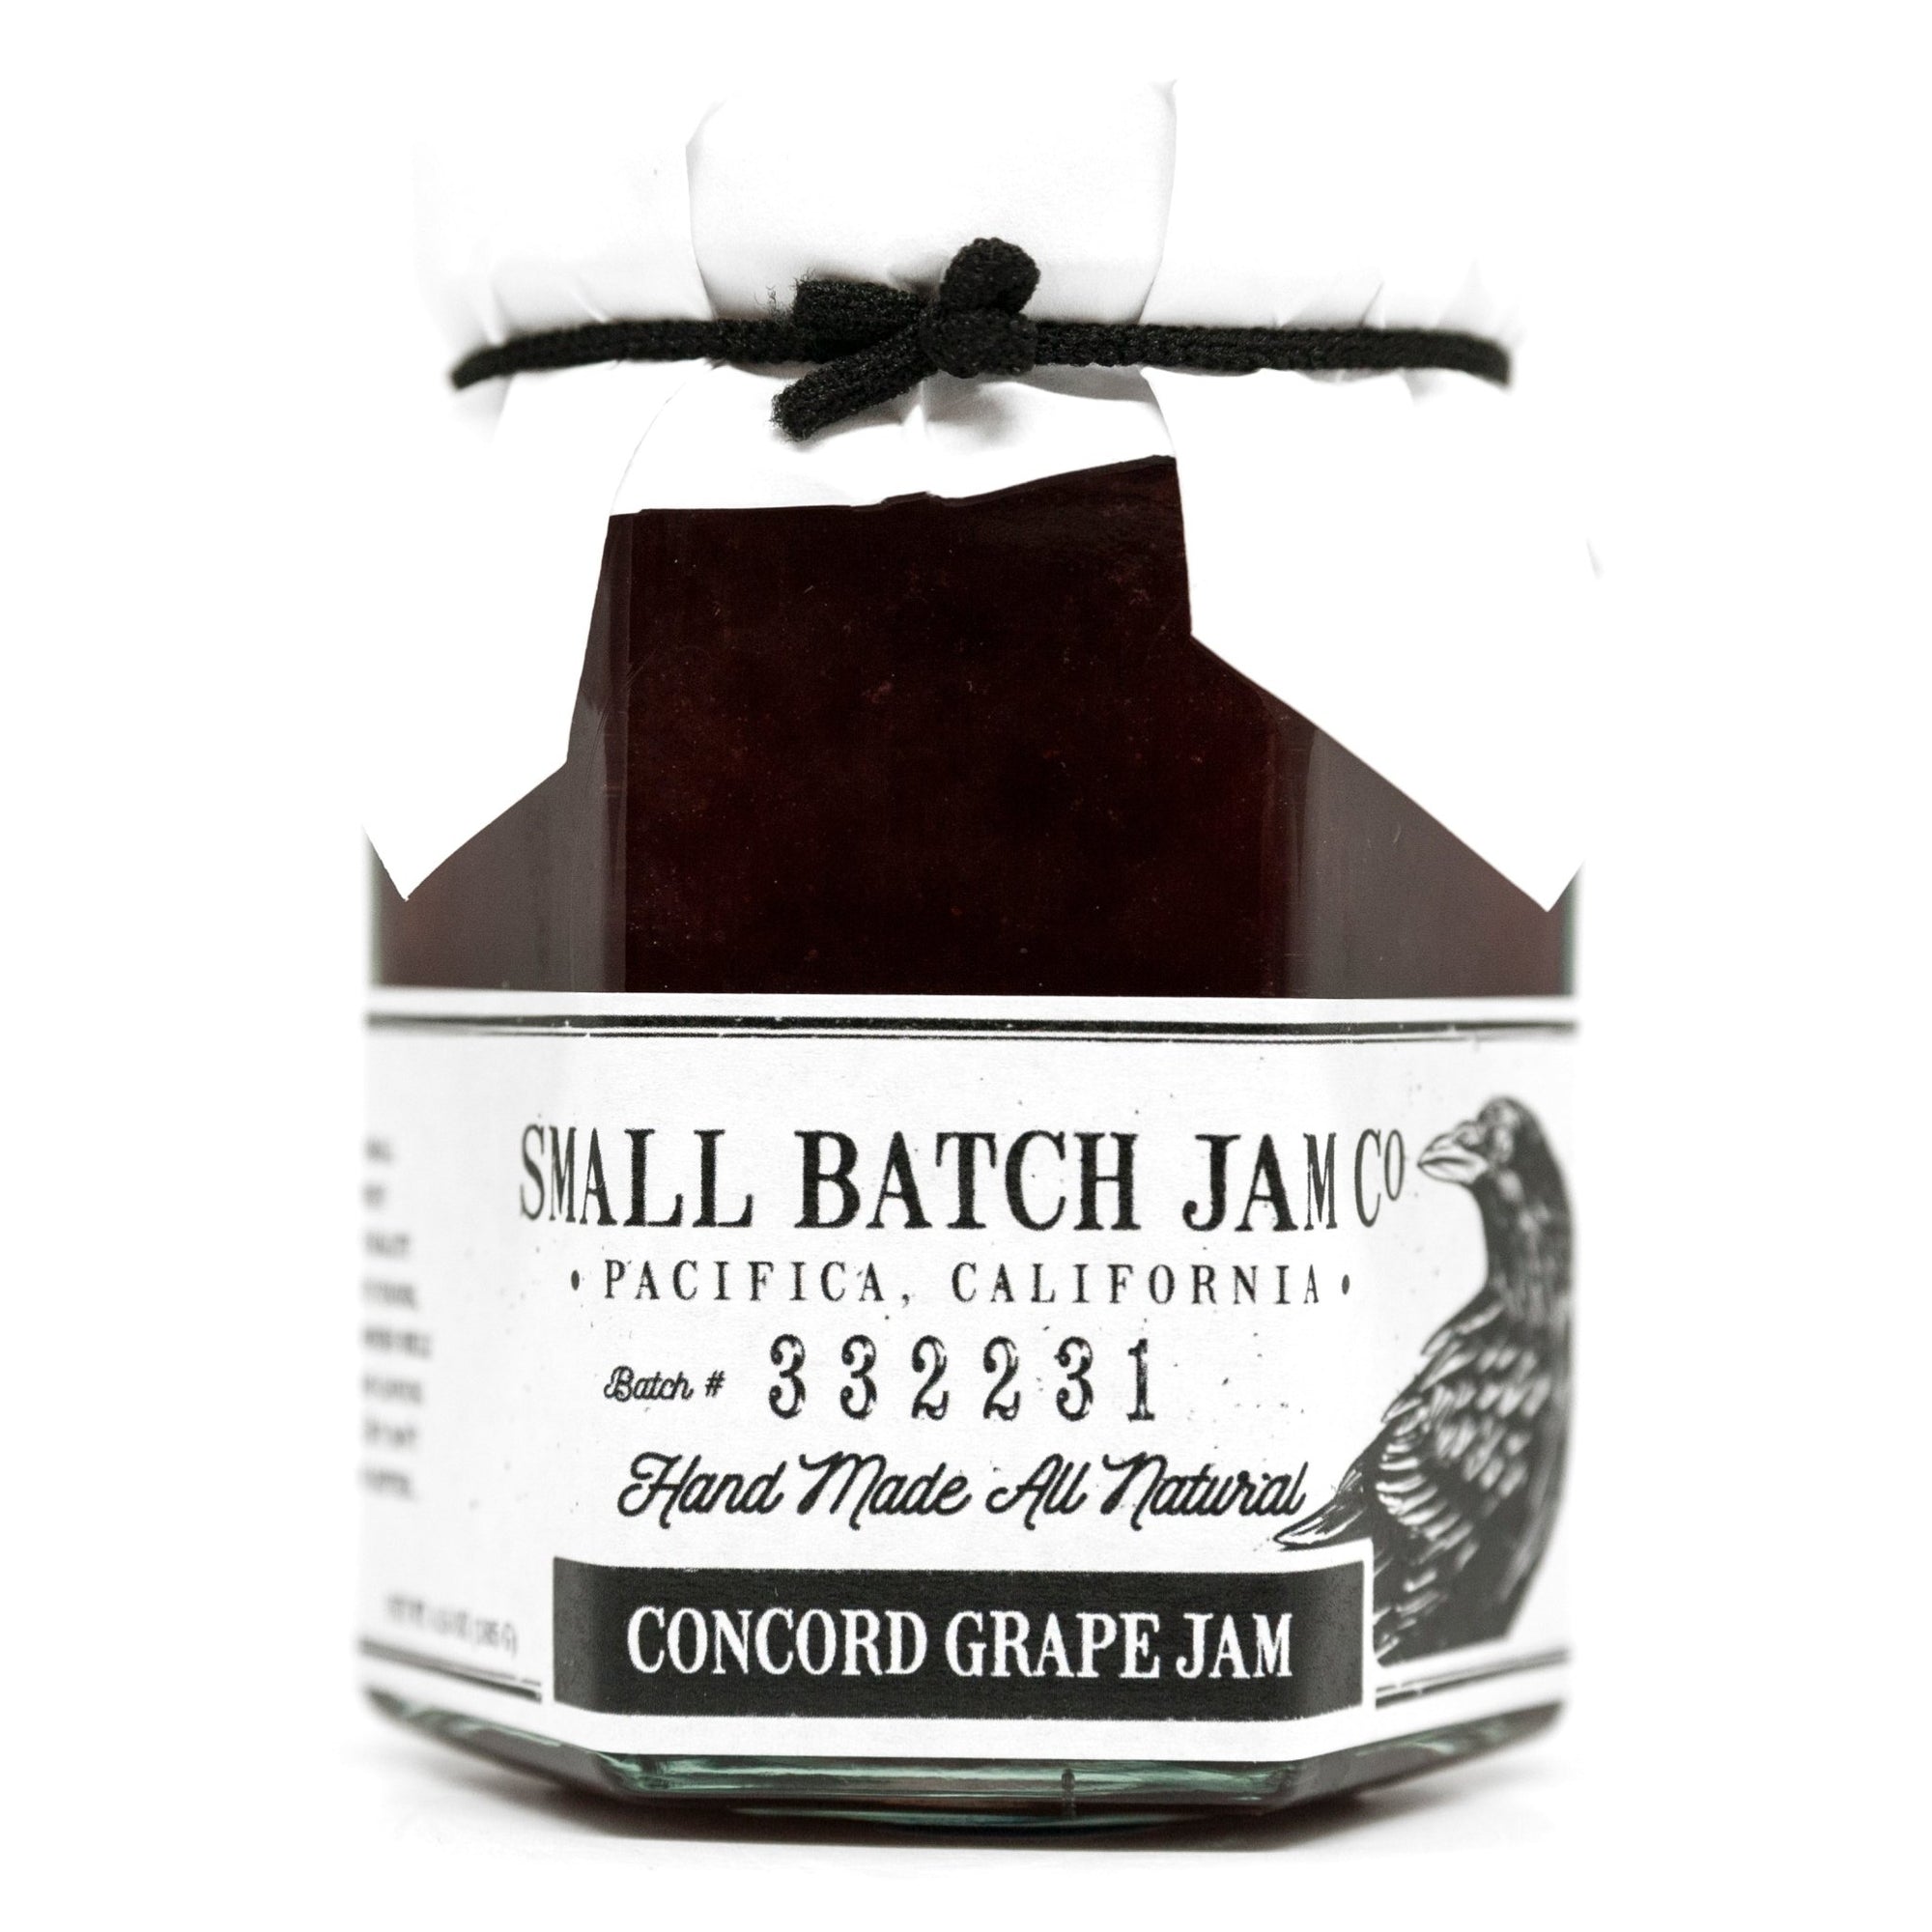 Concord Grape Jam - Small Batch Jam Co